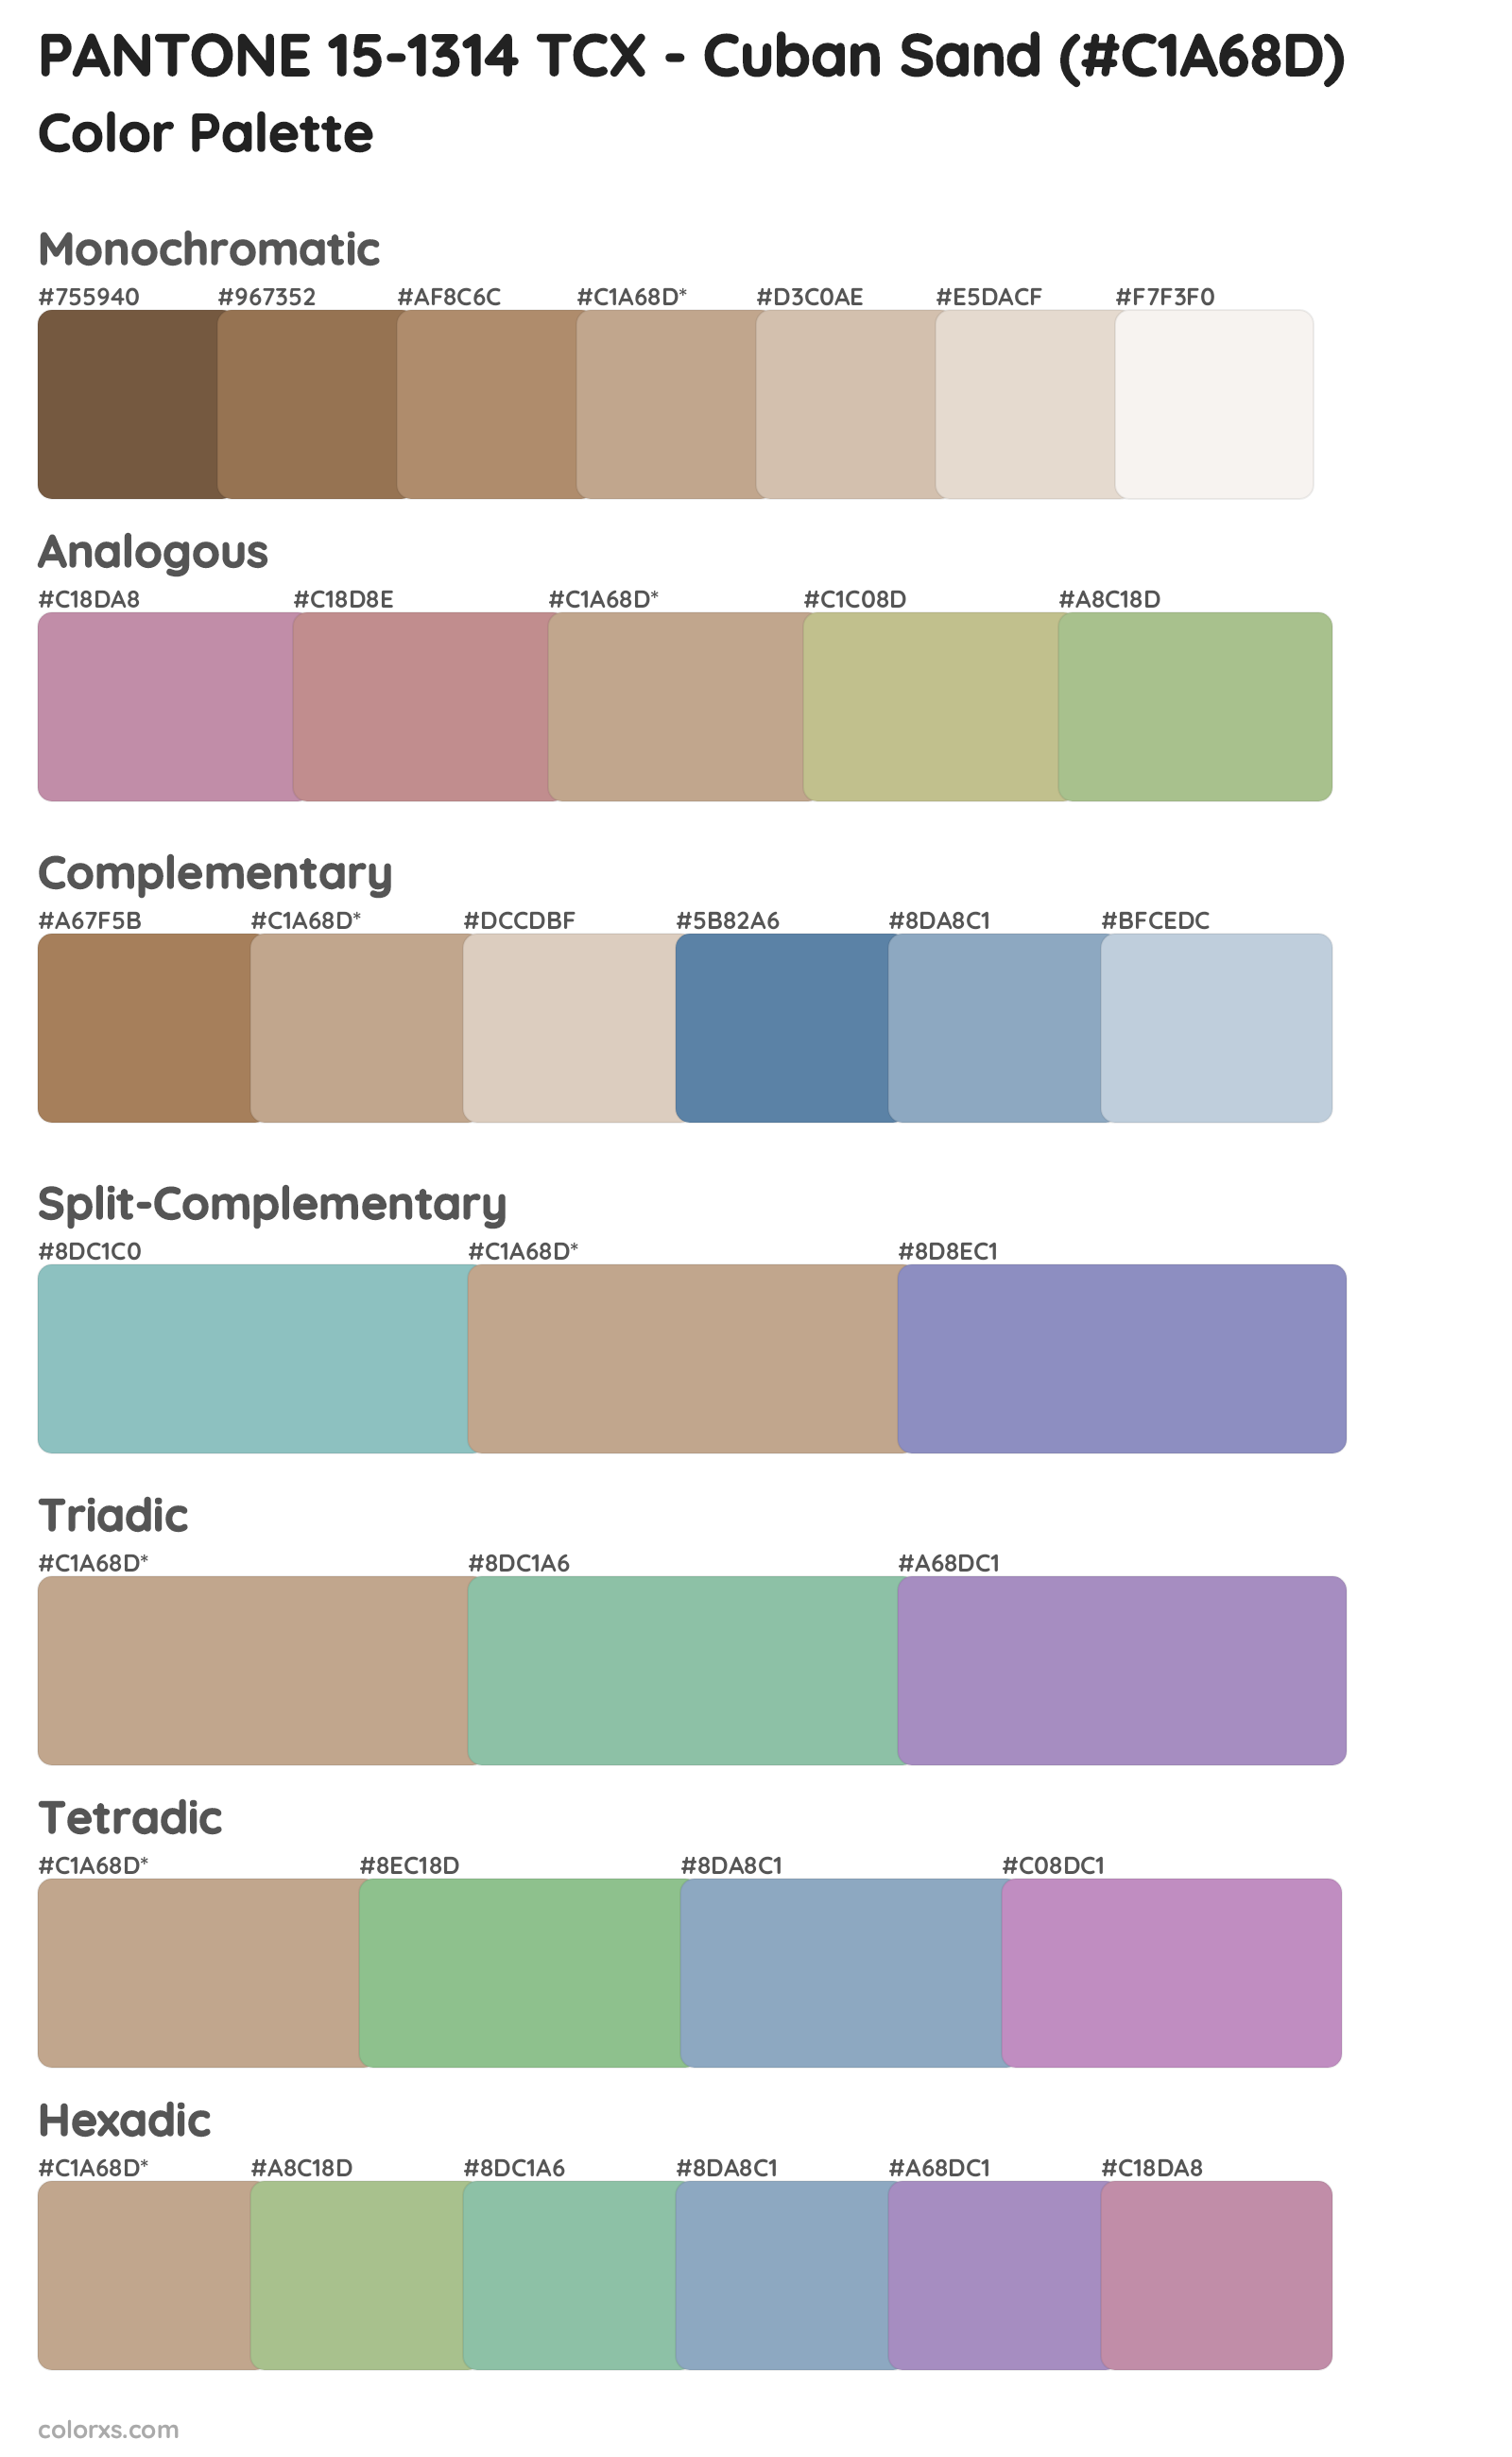 PANTONE 15-1314 TCX - Cuban Sand Color Scheme Palettes